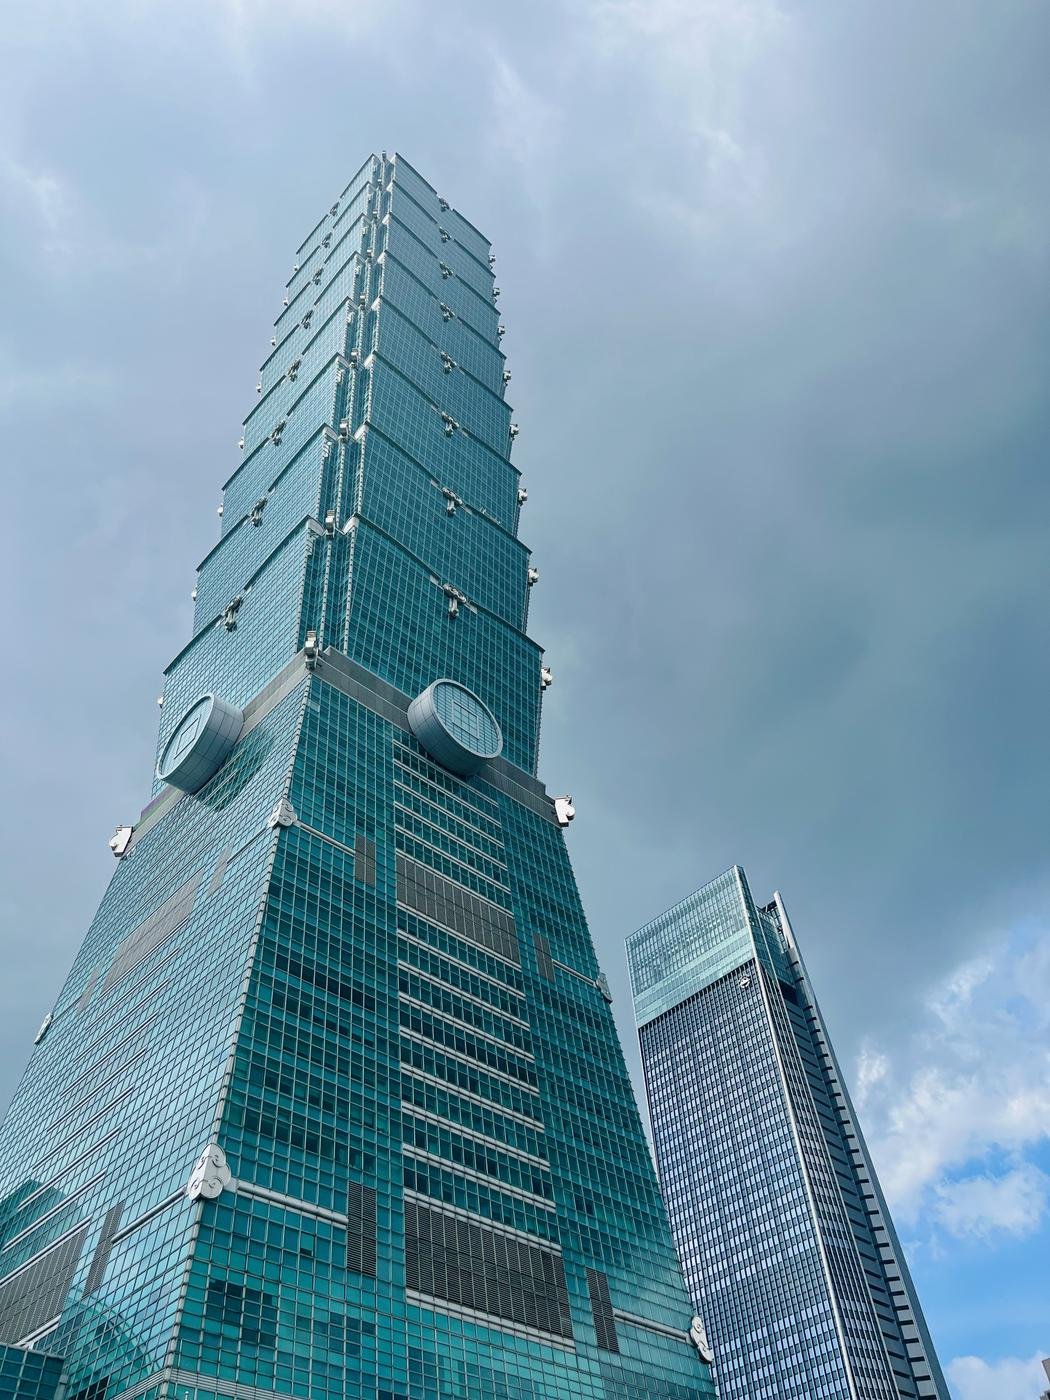 Знаменитая башня Taipei 101, расположена в центре района Xinyi, возможно это самый “свежий” район в городе.